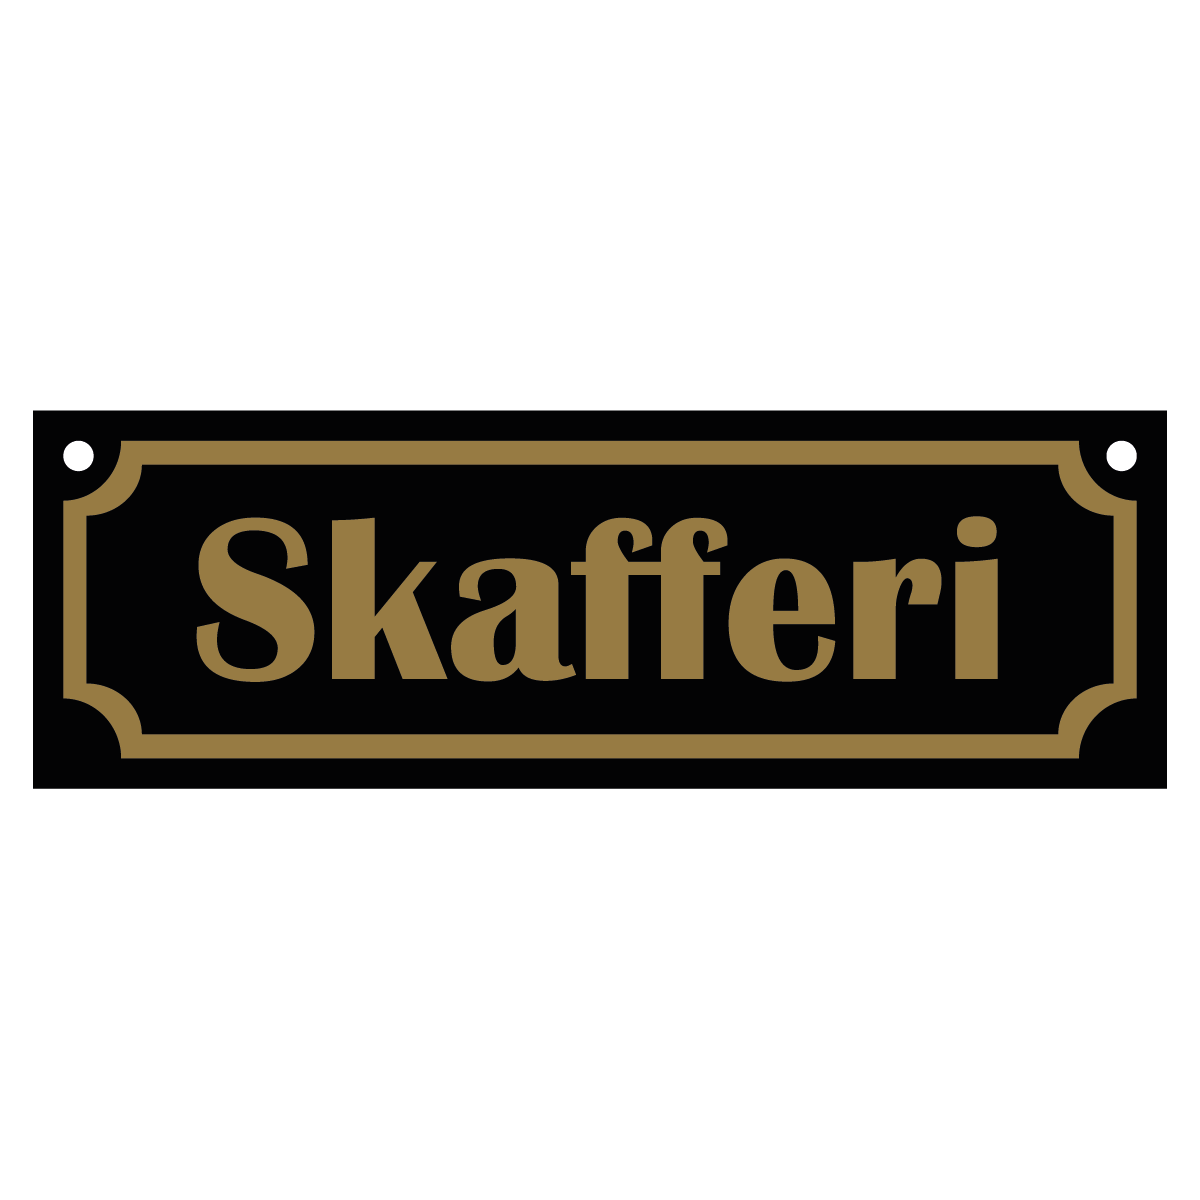 Skafferi - Skylt - 150x50mm - Svart - Guld